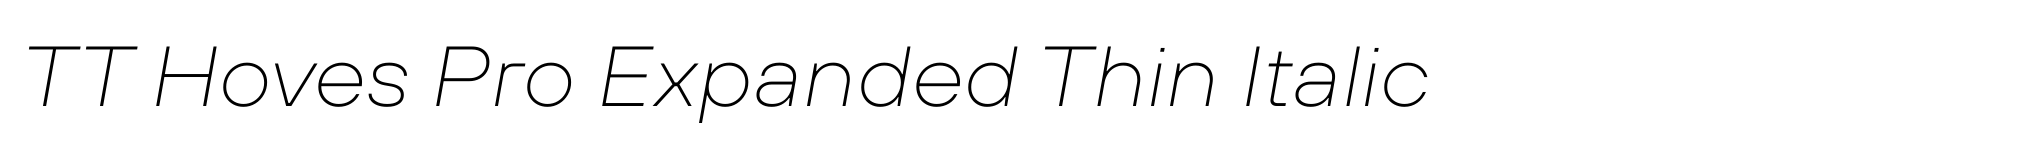 TT Hoves Pro Expanded Thin Italic image